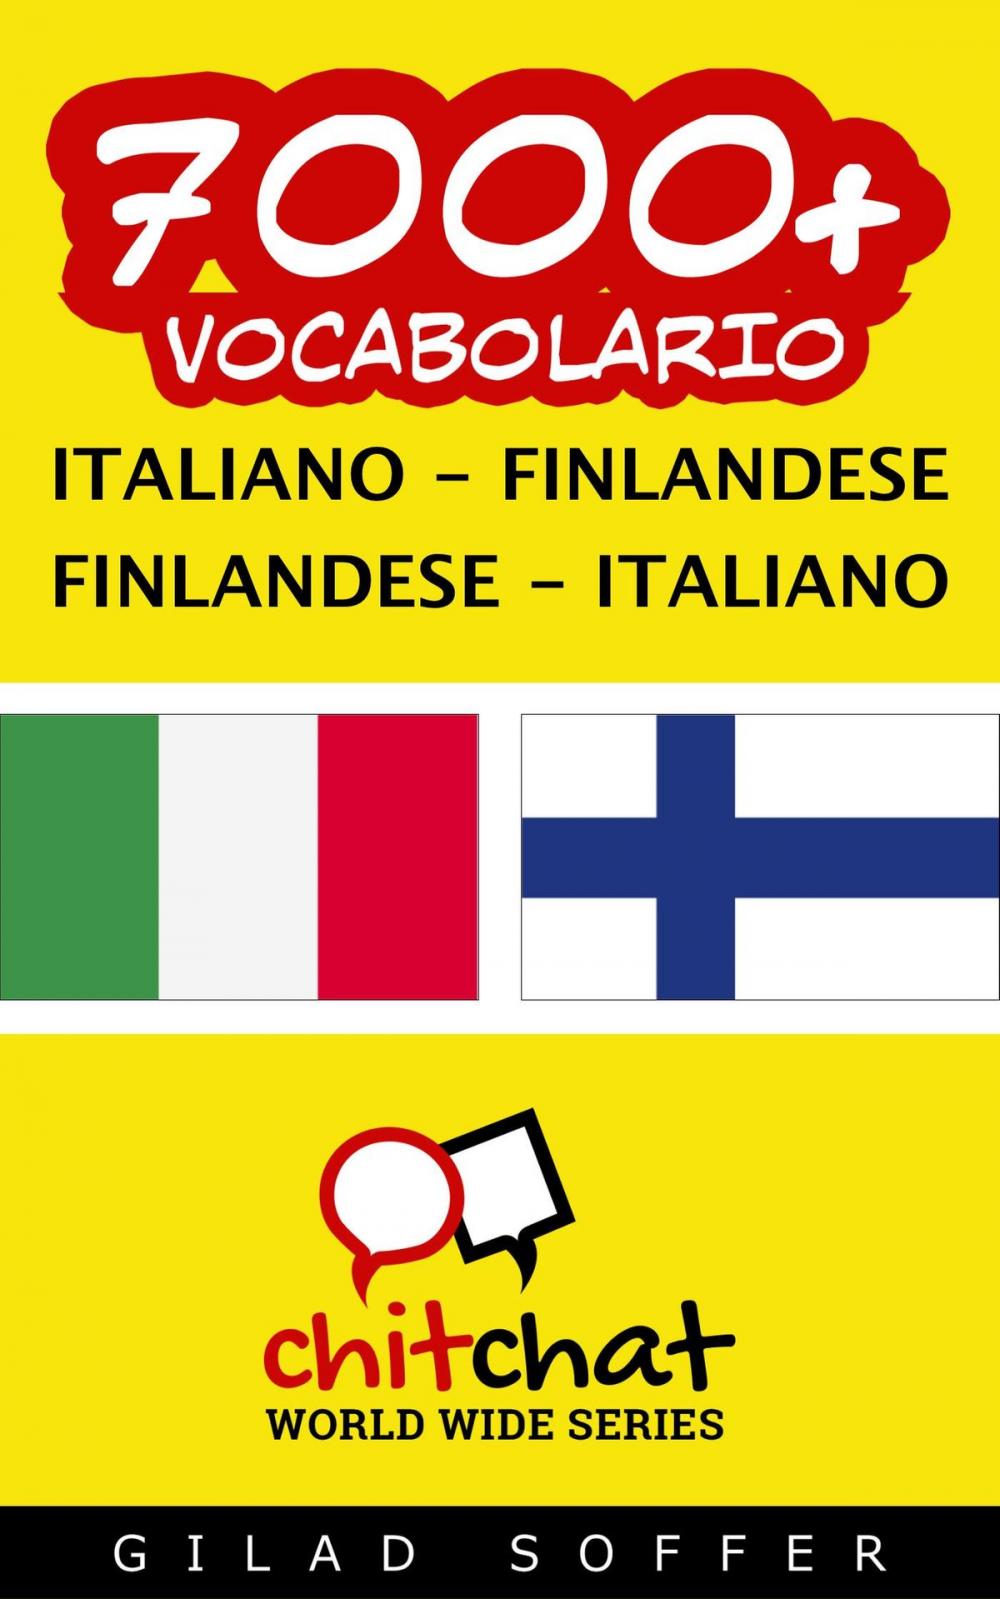 Big bigCover of 7000+ vocabolario Italiano - Finlandese